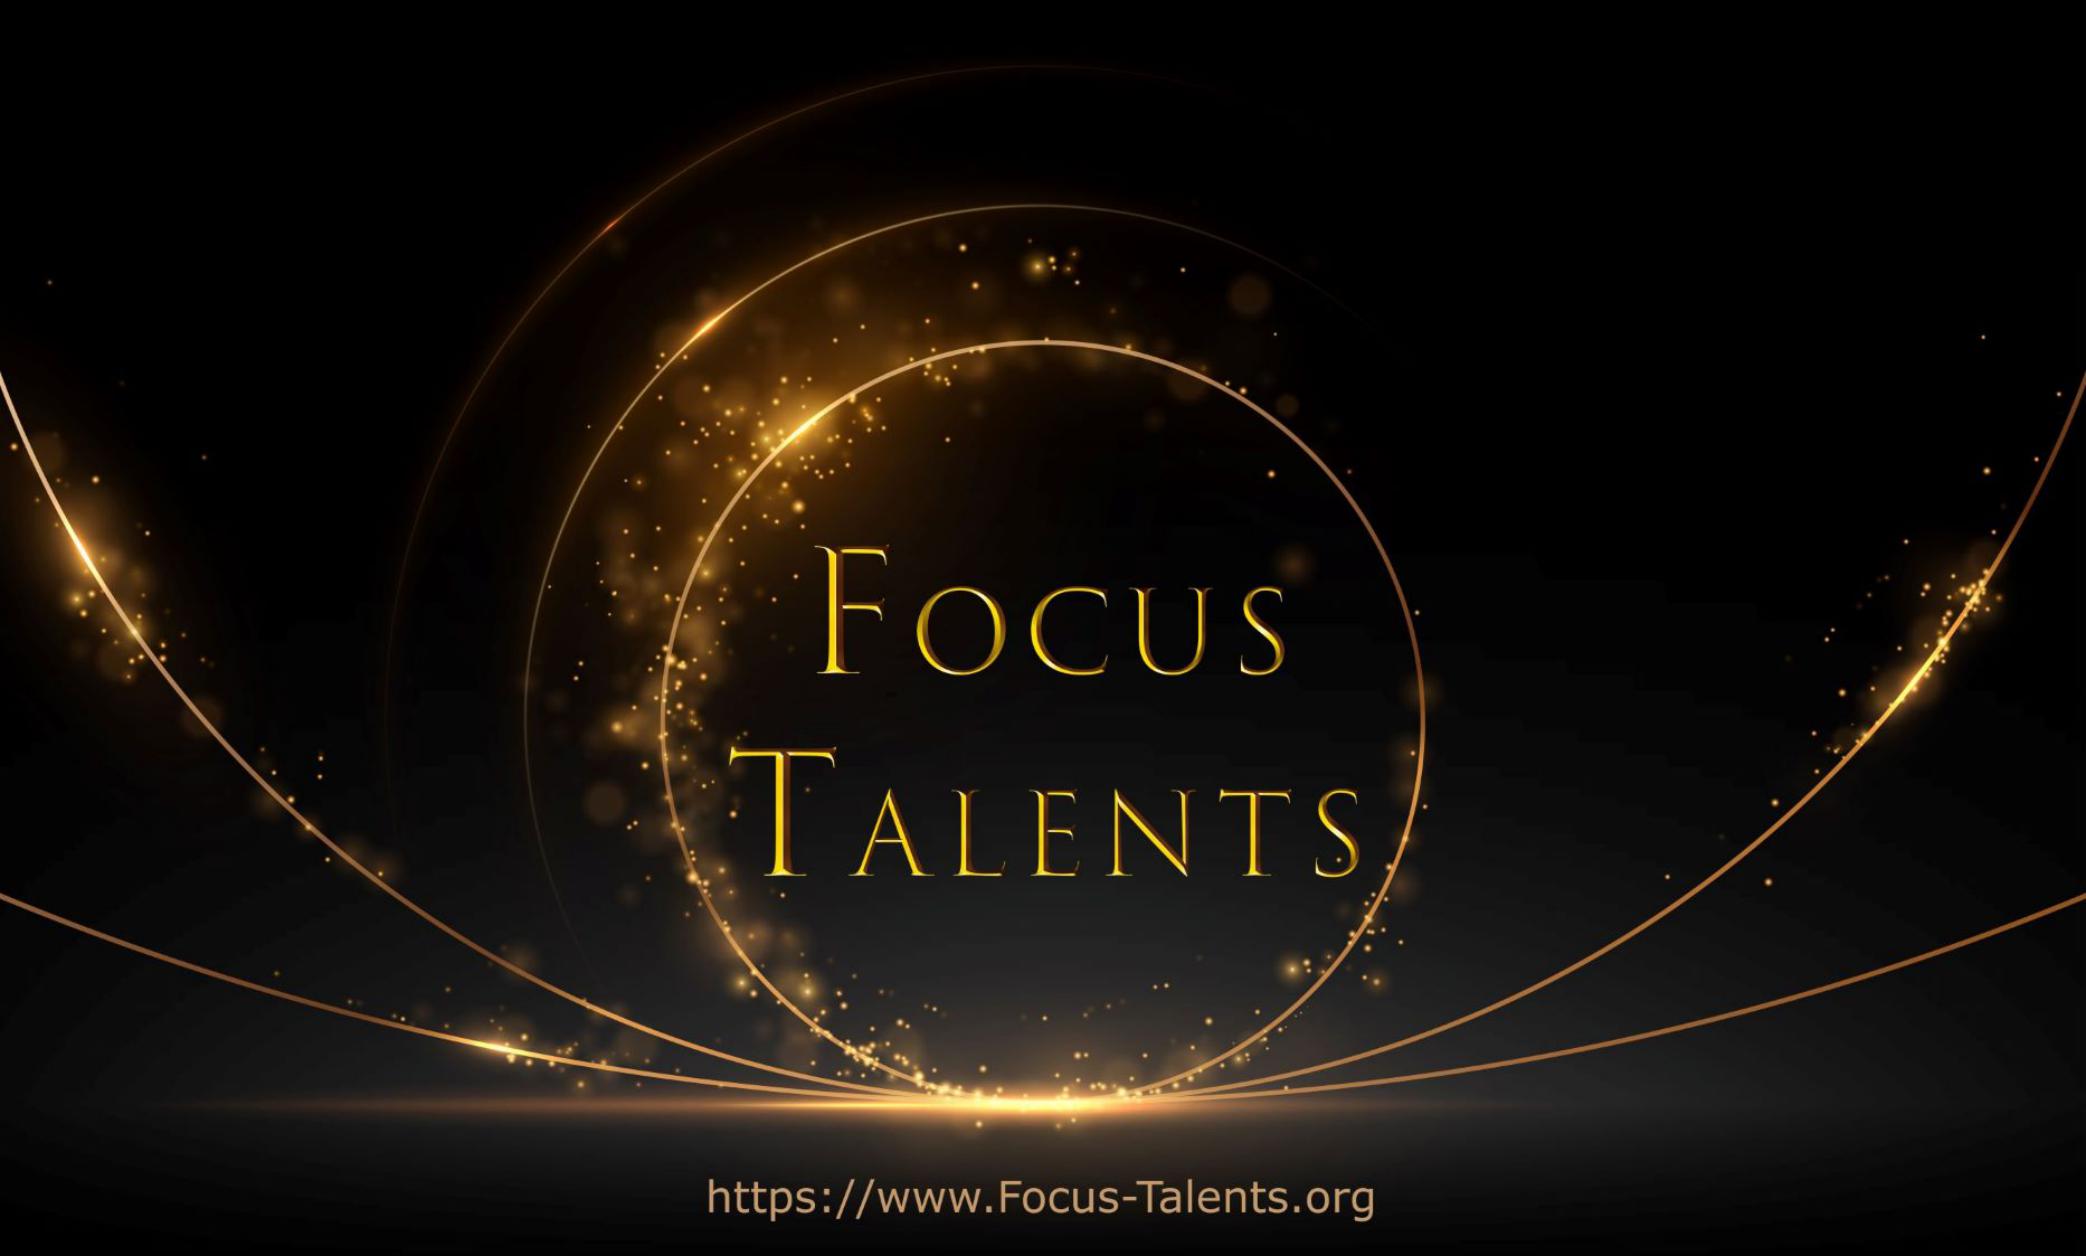 Focus-Talents.org